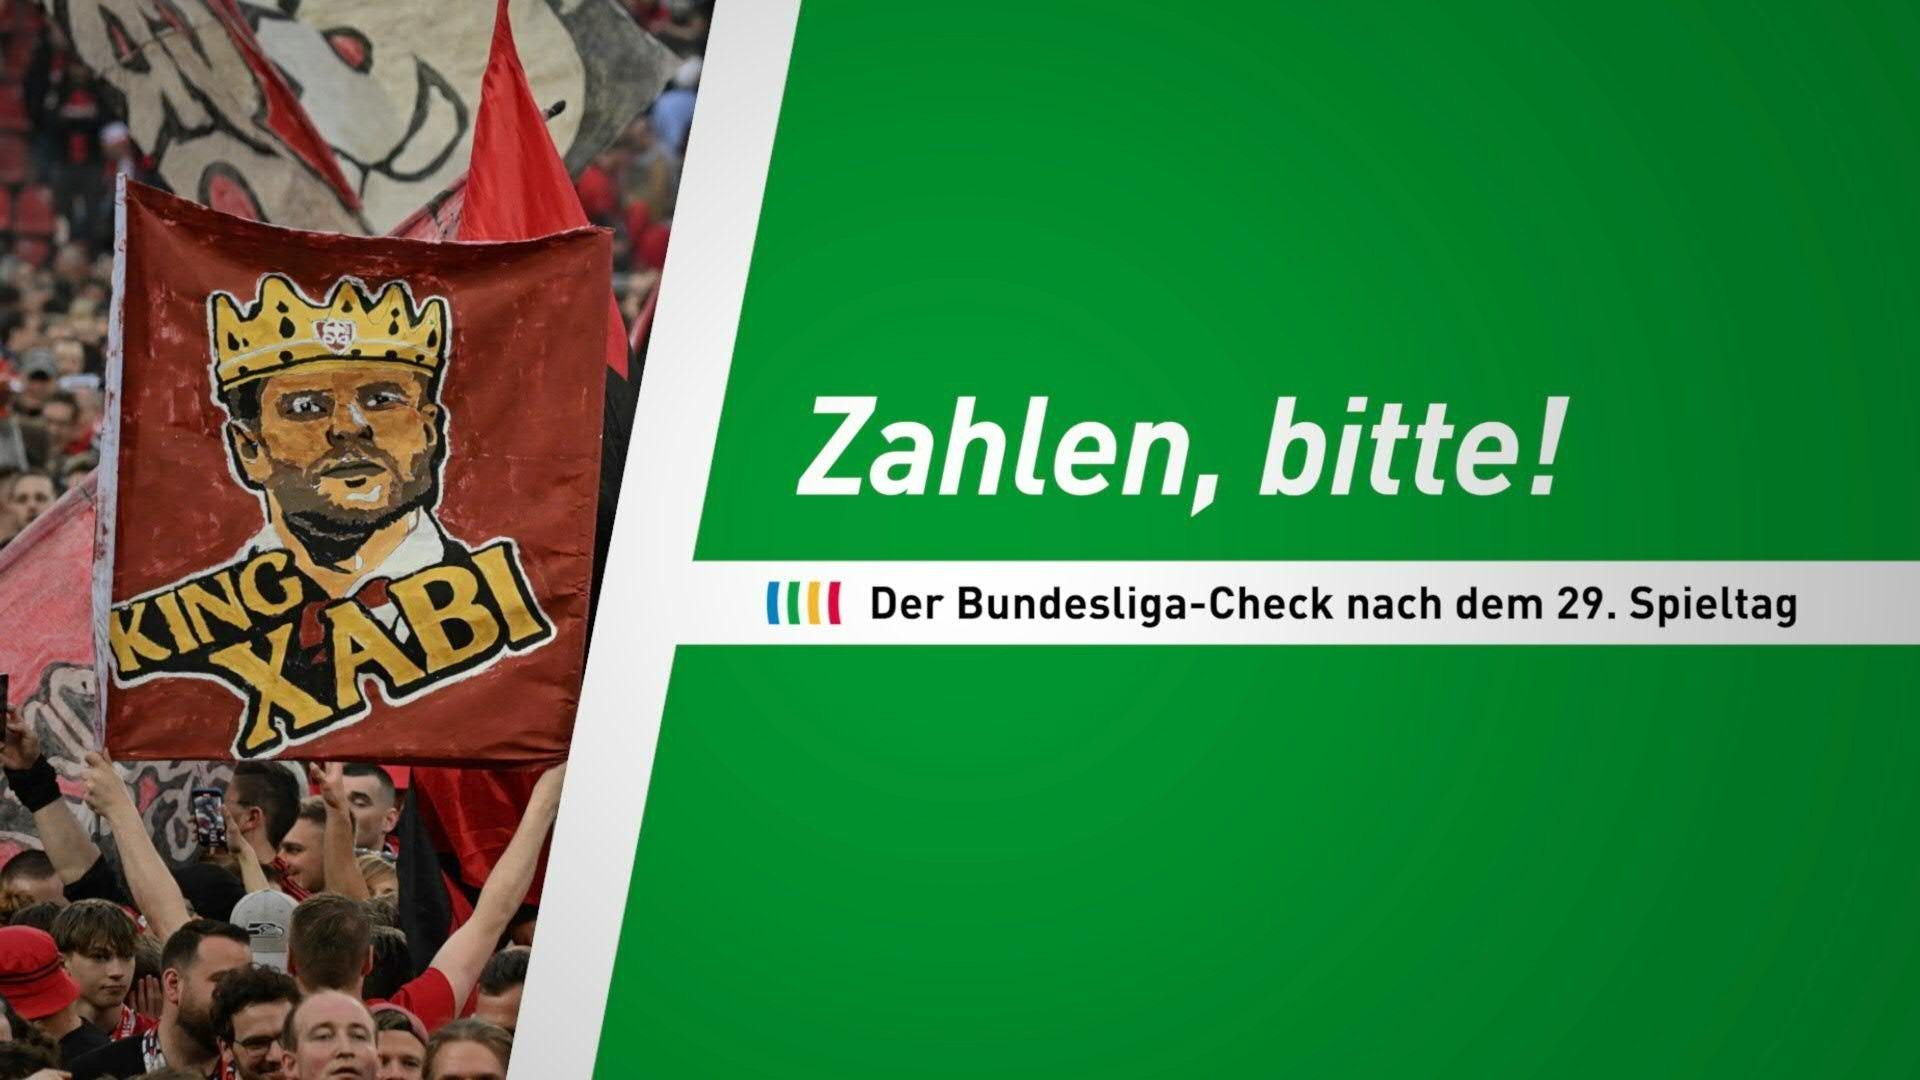 Zahlen, bitte! Der Bundesliga-Check nach dem 29. Spieltag